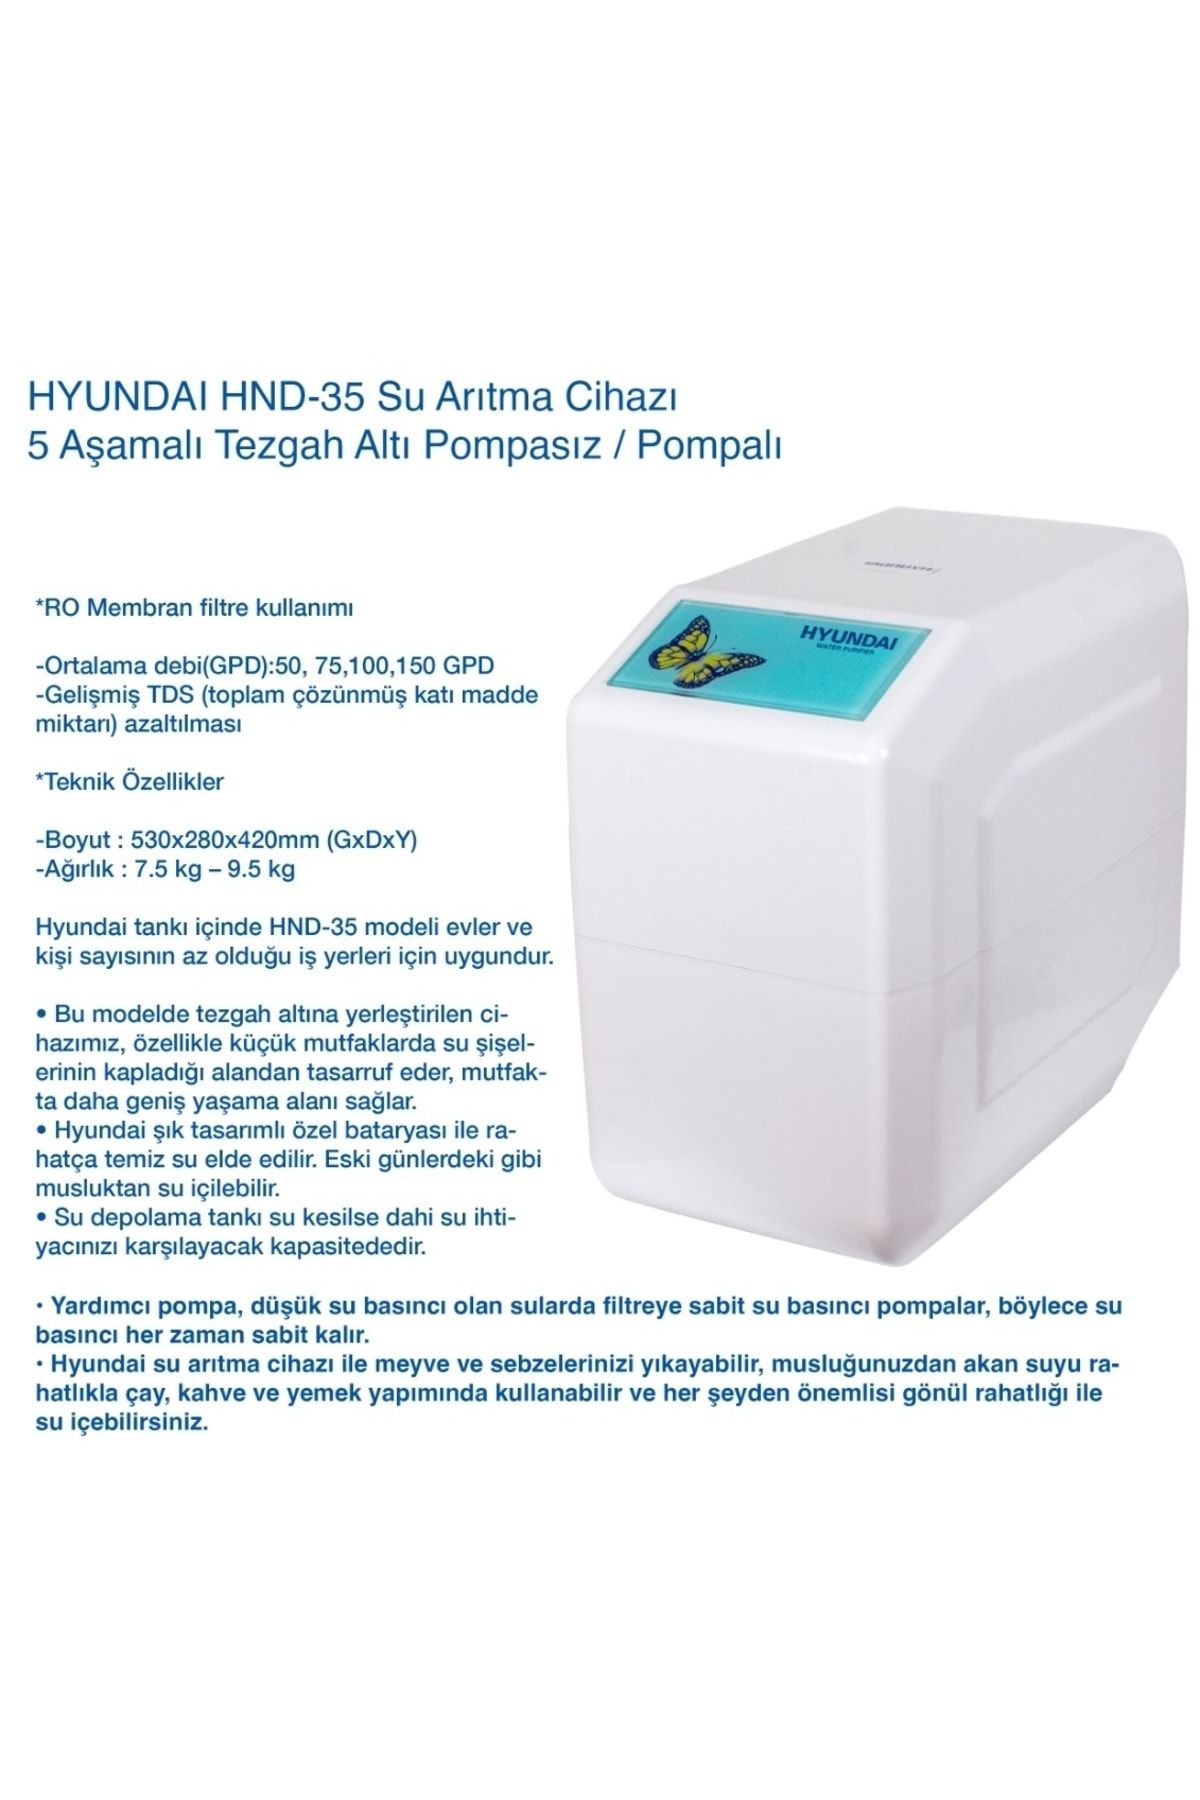 Hyundai Hnd-35 M Pompalı ( Motorlu ) Su Arıtma Cihazı